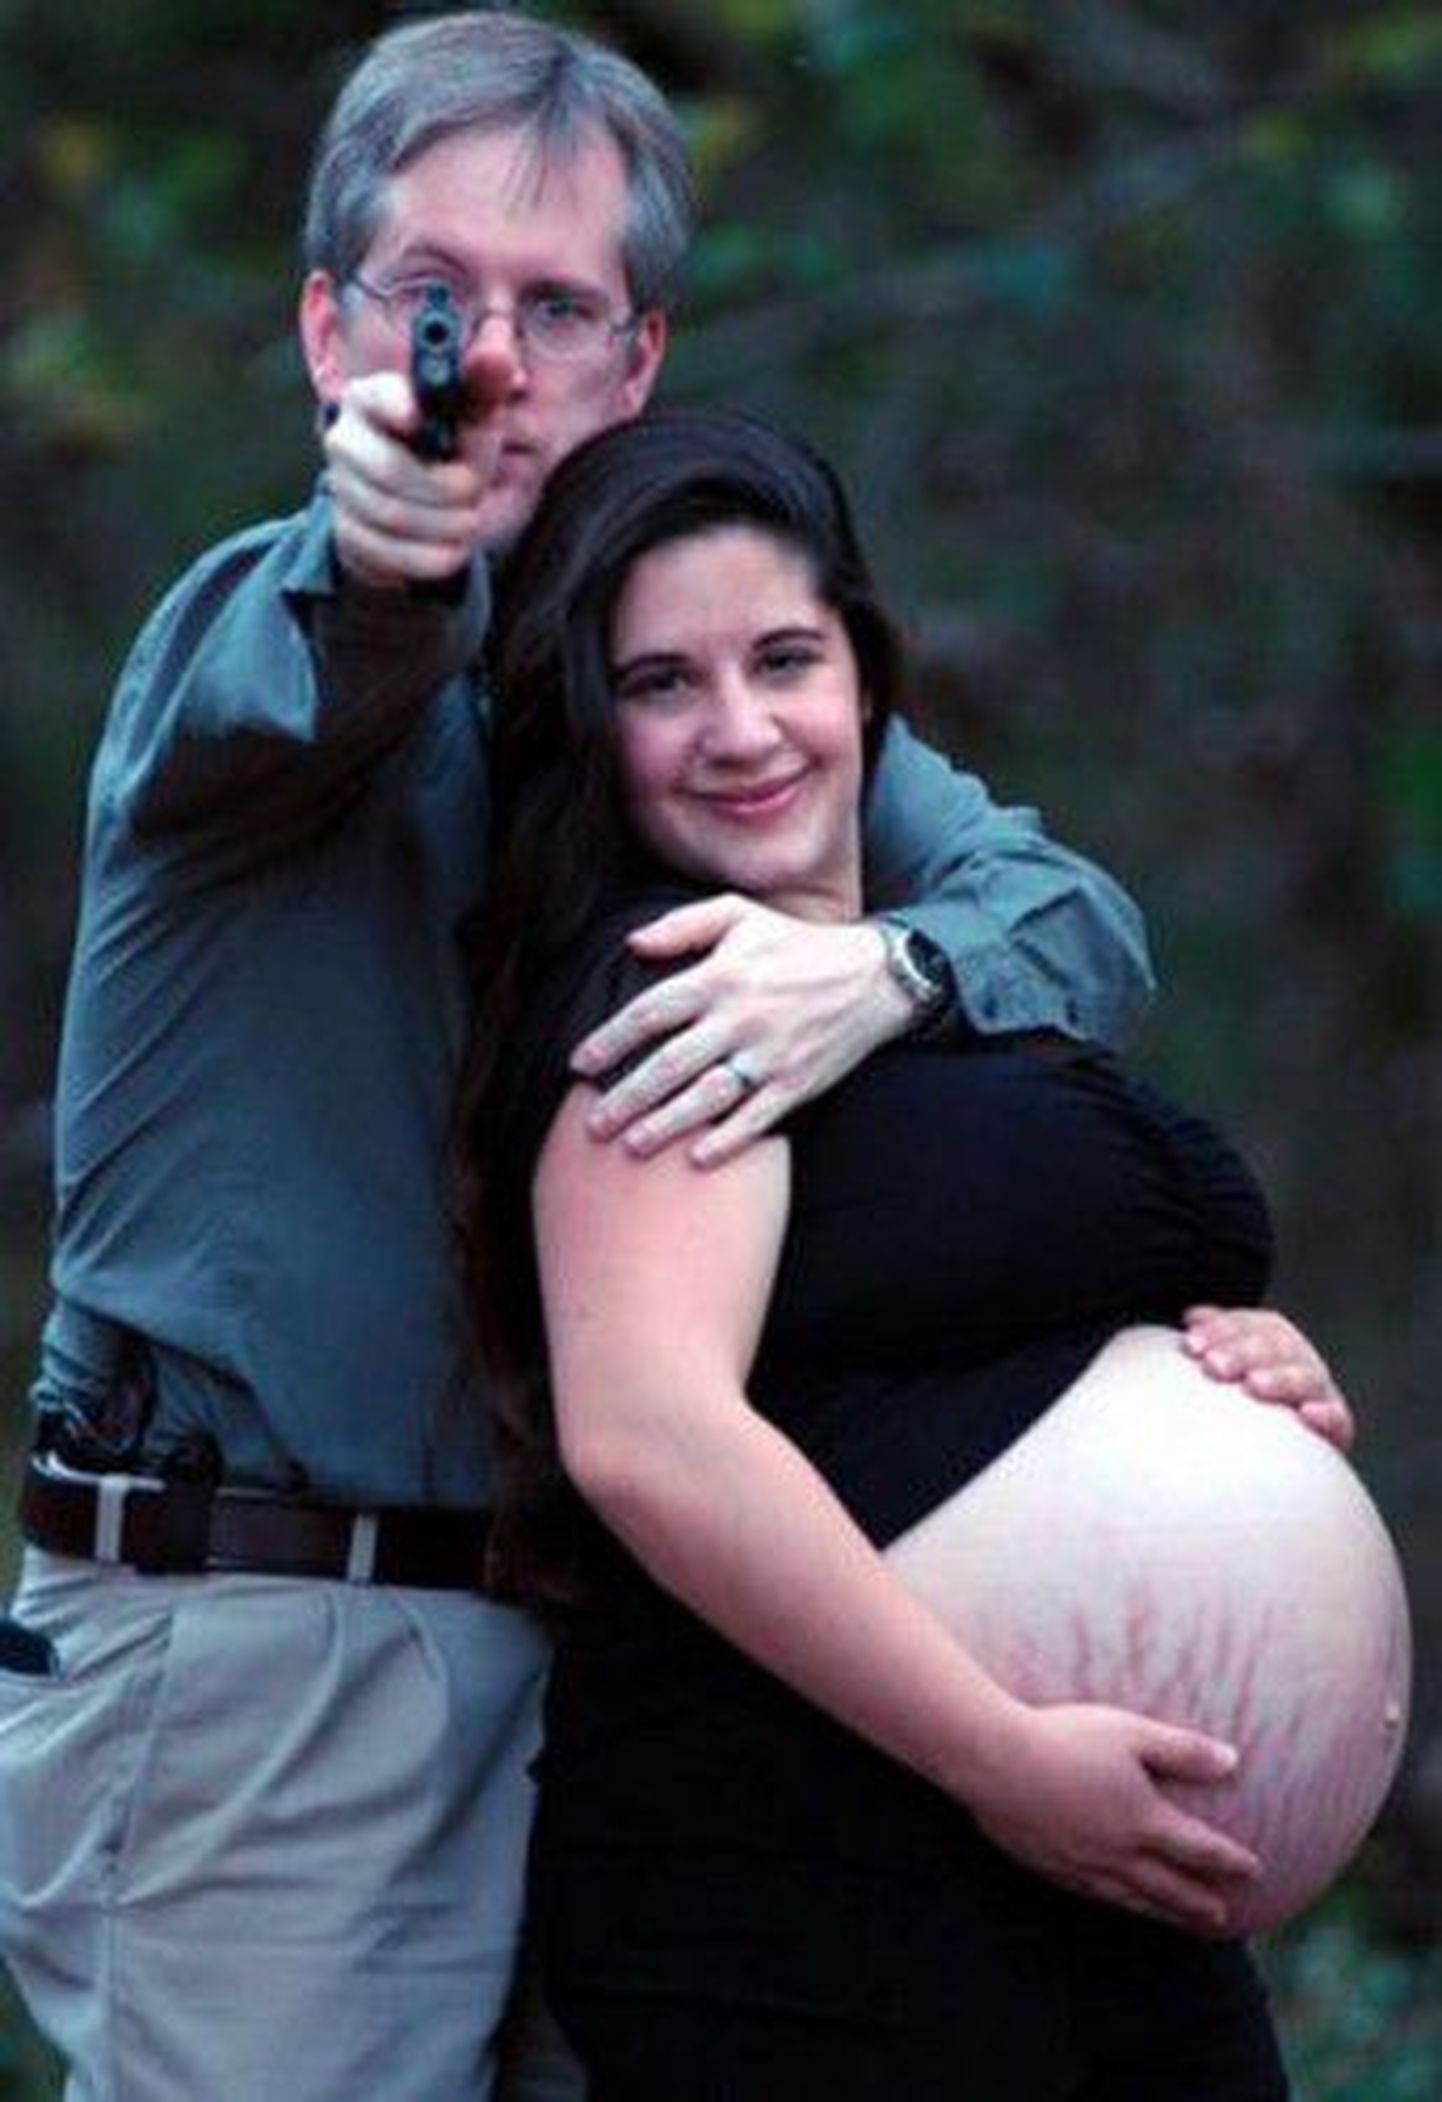 Беременная женщина. Странное фото.